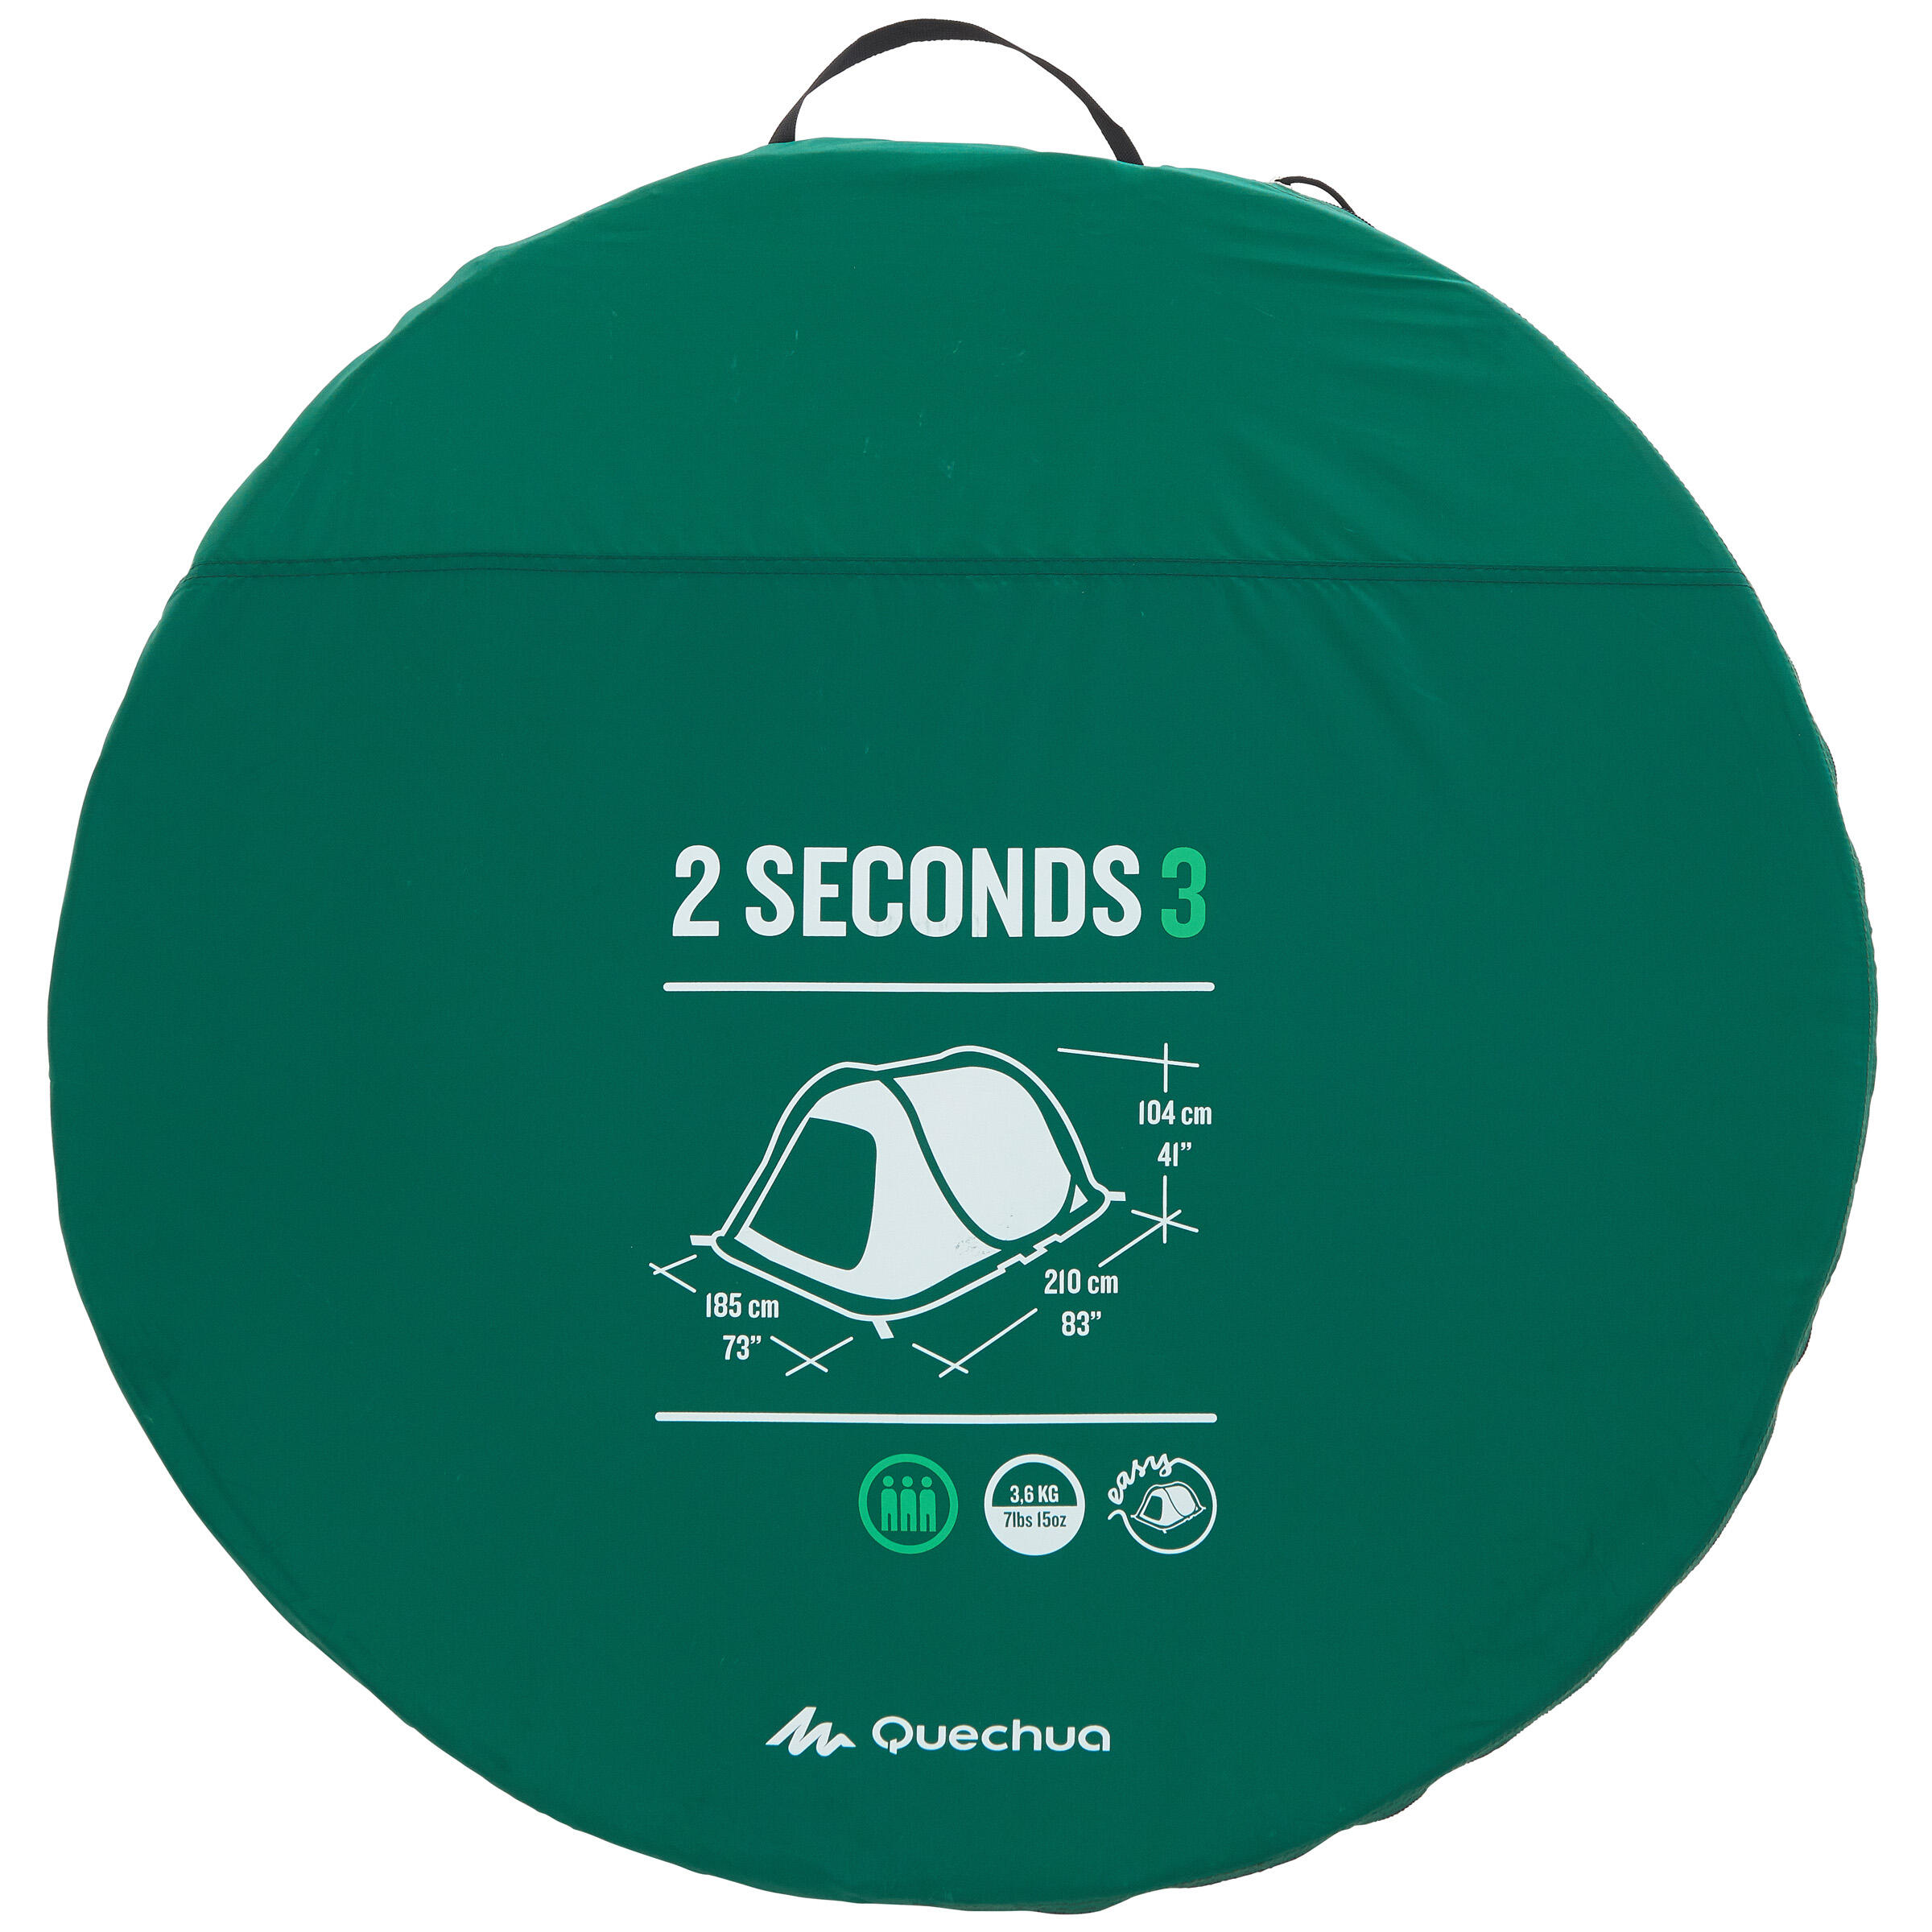 2 seconds 3 tent